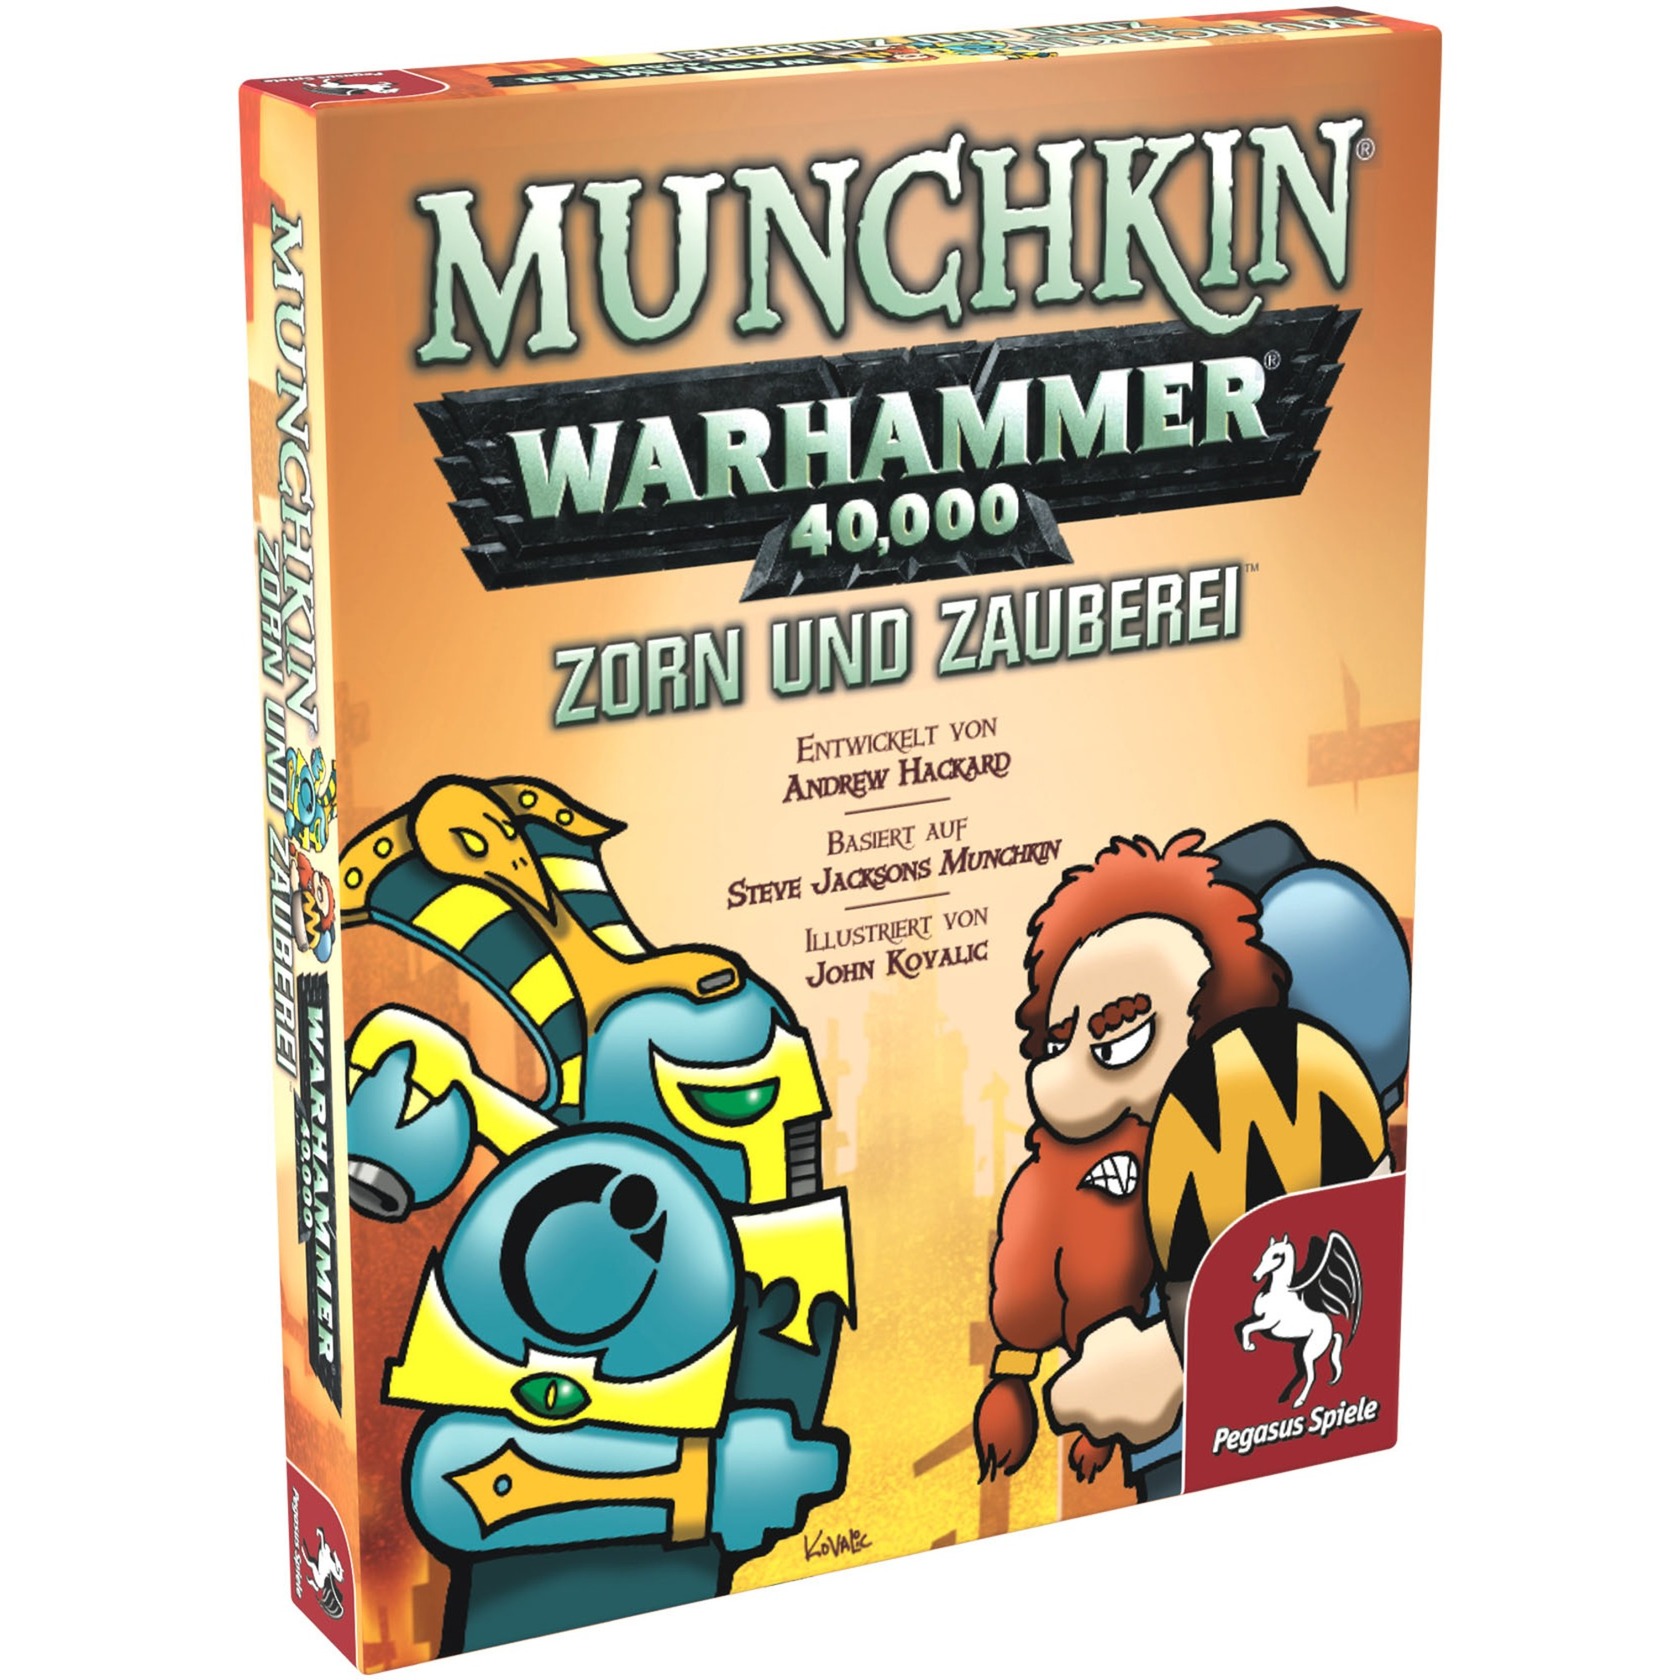 Image of Alternate - Munchkin Warhammer 40.000: Zorn und Zauberei, Kartenspiel online einkaufen bei Alternate